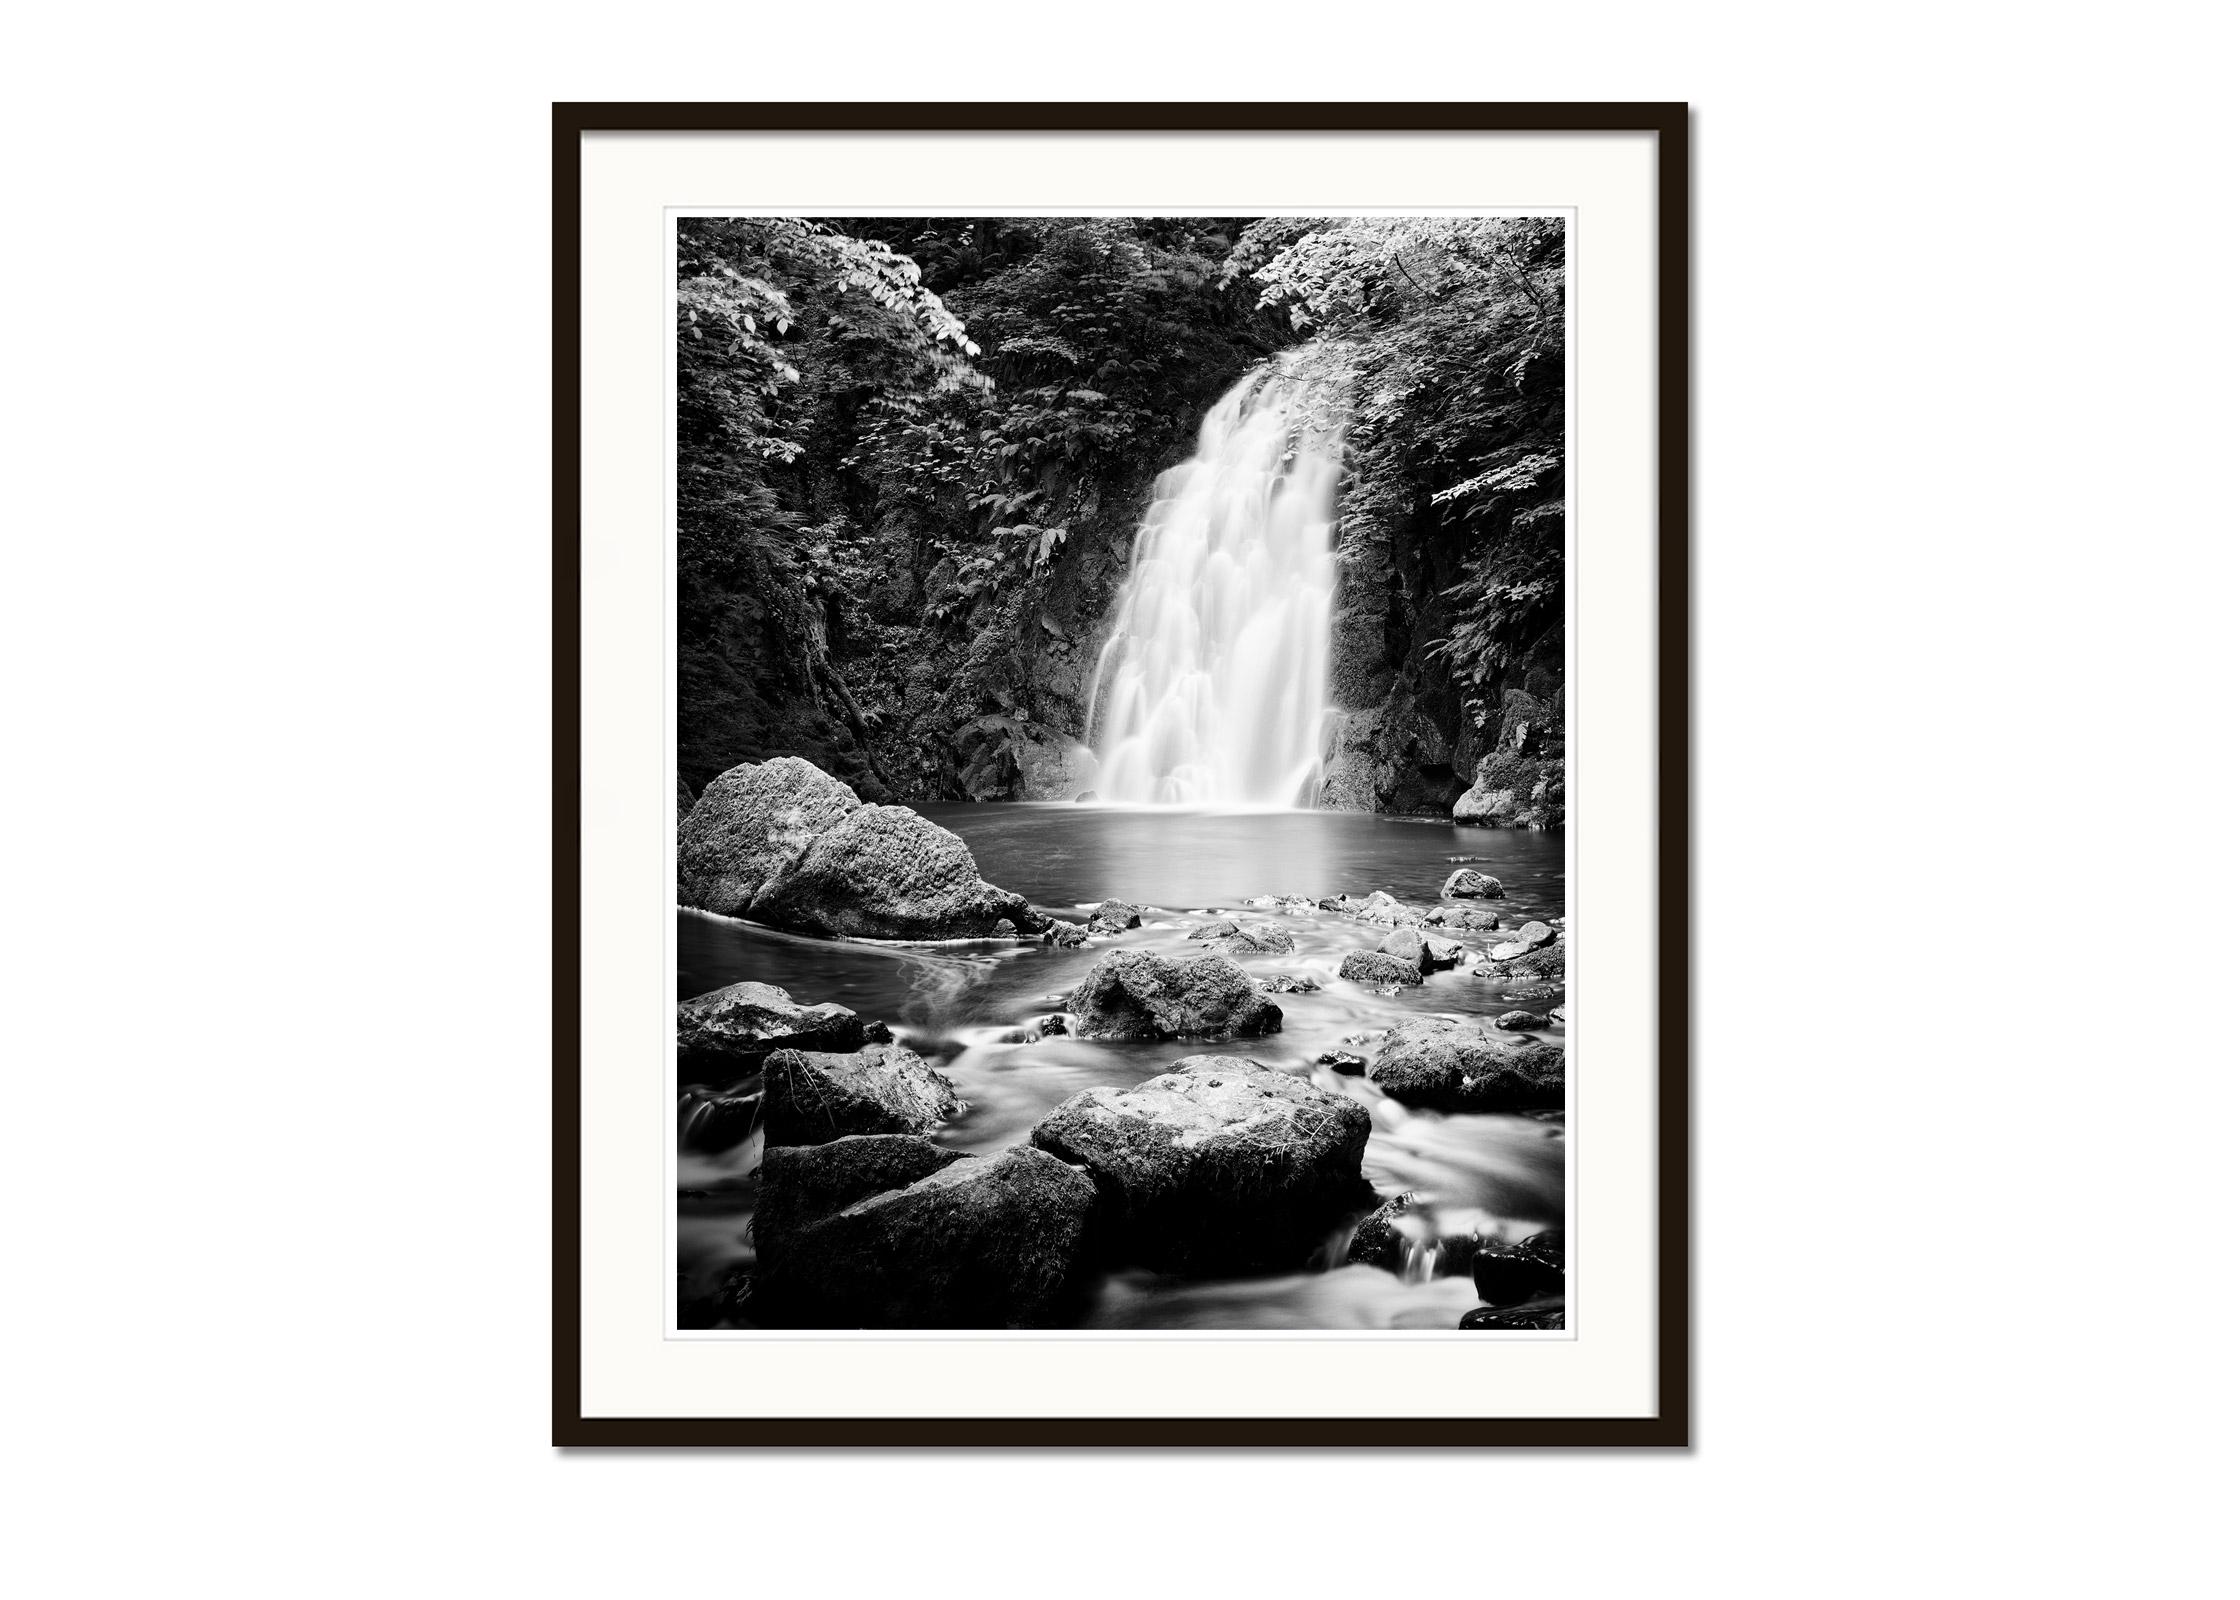 Schwarz-Weiß-Fotografie mit Langzeitbelichtung für Wasserlandschaften - Landschaftsfotografie. Atemberaubender Glenoe-Wasserfall inmitten eines wunderschönen Waldes in Nordirland. Pigmenttintendruck in einer limitierten Auflage von 8 Exemplaren.